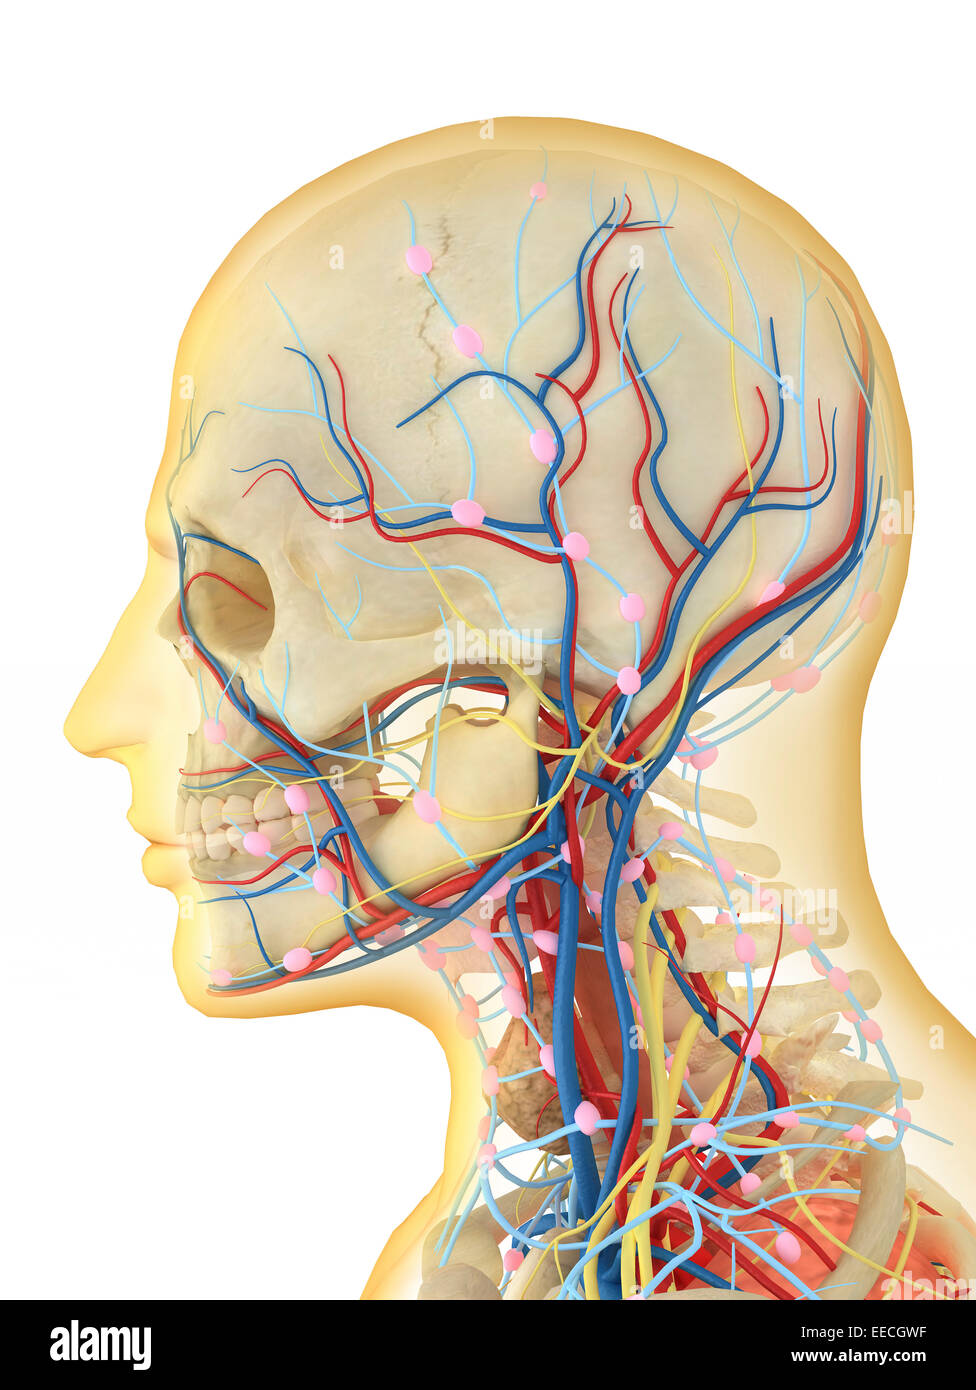 Menschlichen Gesicht und Hals-Bereich mit internen Kehle Teile, Nervensystem, Lymphsystem und Herz-Kreislauf-System. Stockfoto